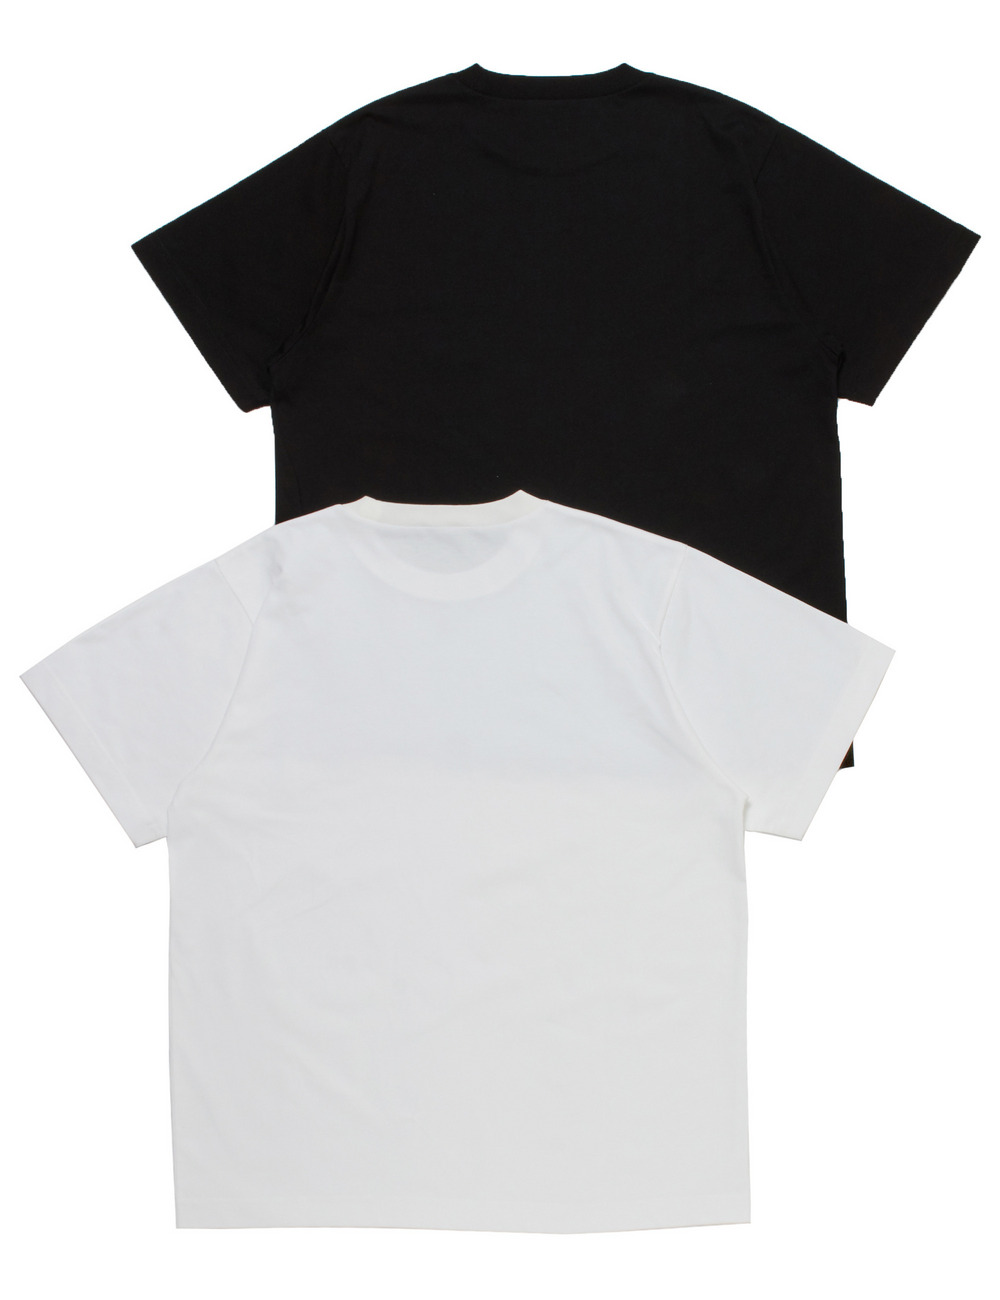 【オンライン限定】パックTシャツ(2枚組)/【ONLINE LIMITED】PACK TEE(2PCS) 詳細画像 ホワイトブラック 2